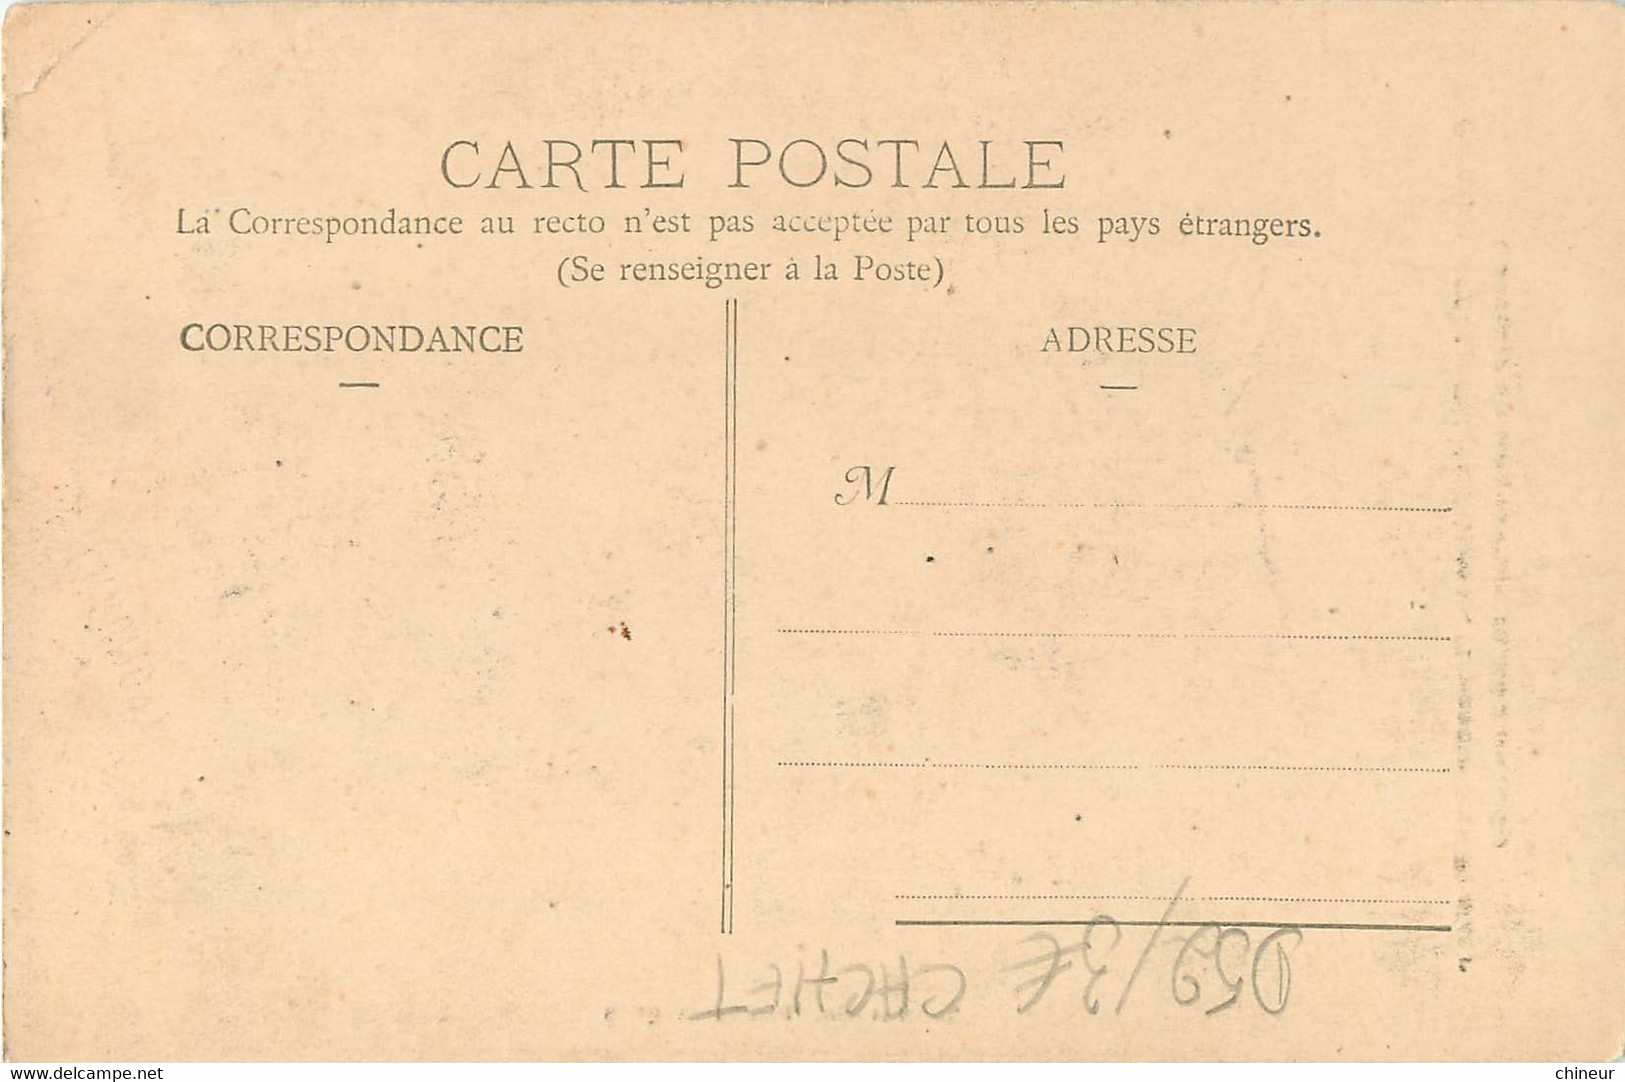 CHAUMONT LA PALAIS D'HERODE REPOSOIR RUE PASTEUR SOUVENIR DU GRAND PARDON 24 JUIN 1906 - Chaumont